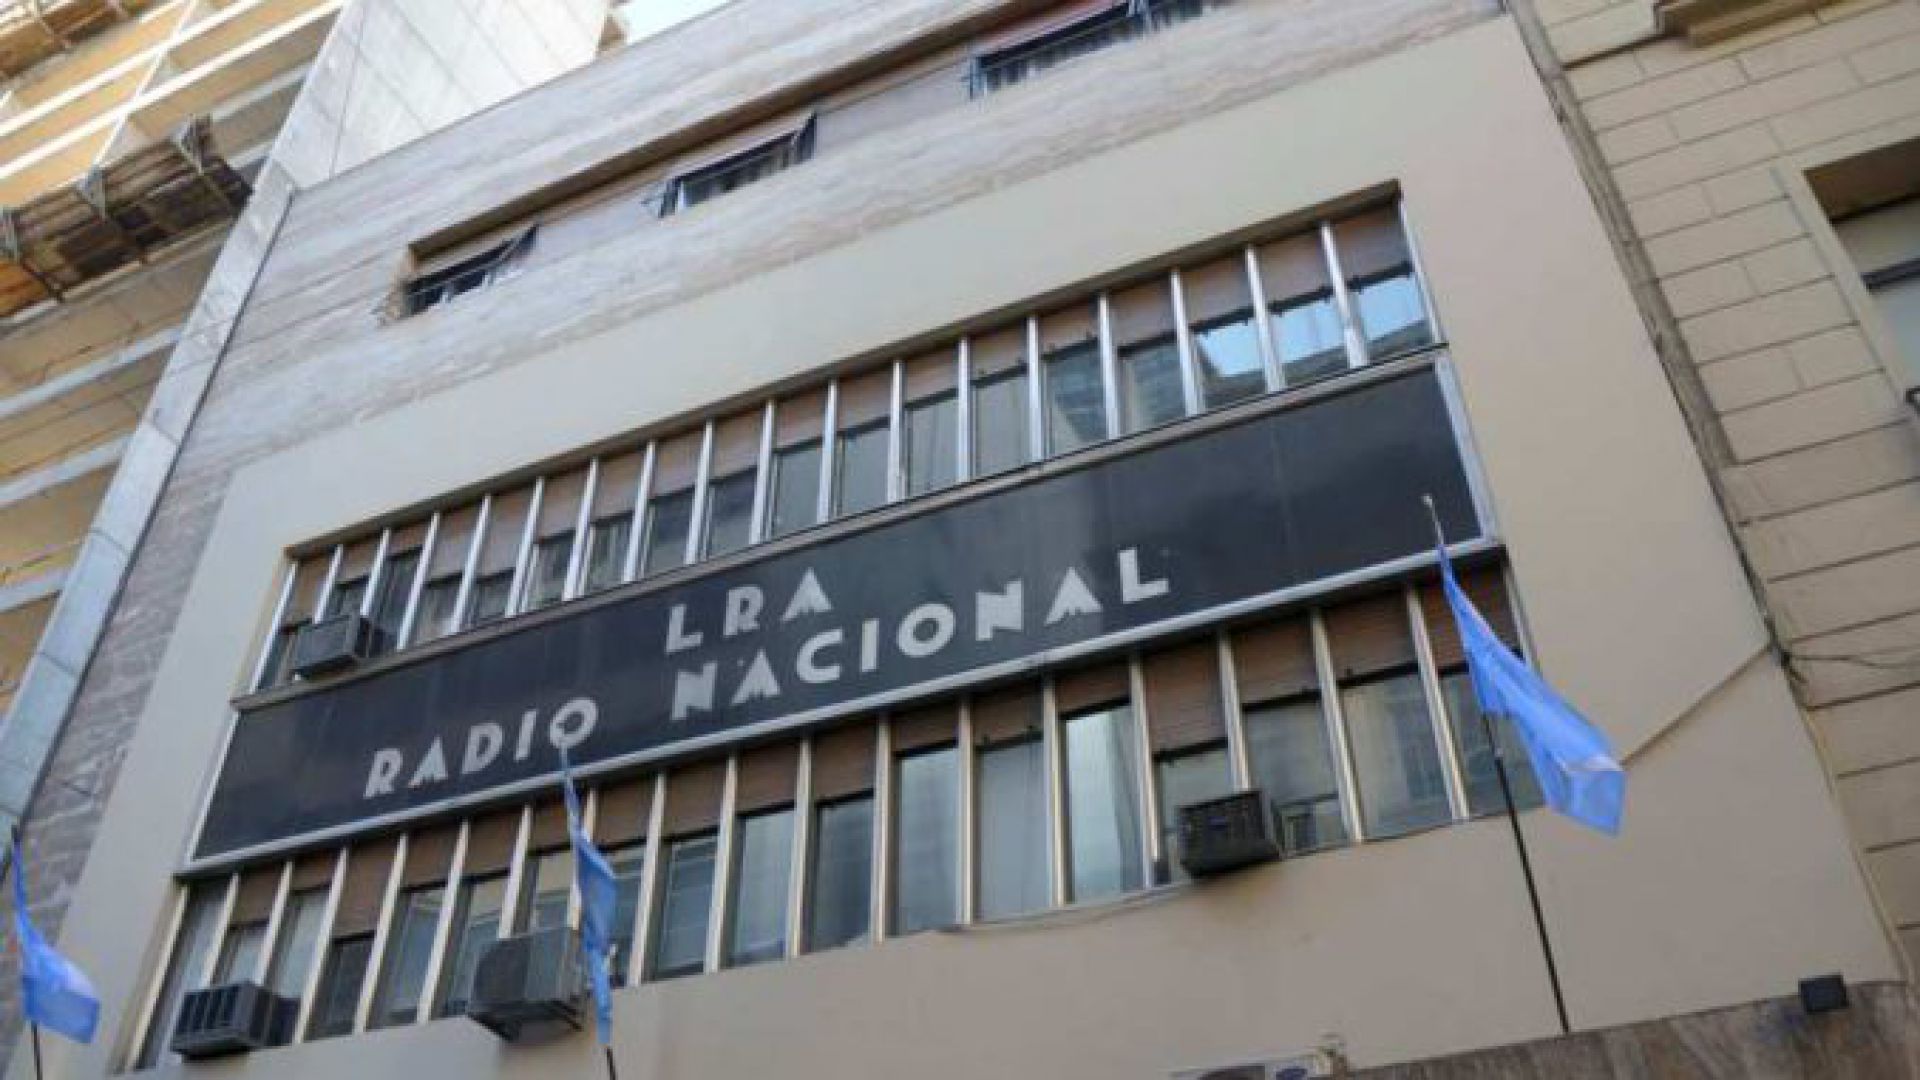 Trabajadores  y trabajadoras de Radio Nacional solicitaron desagravio frente a lo publicado en LN+